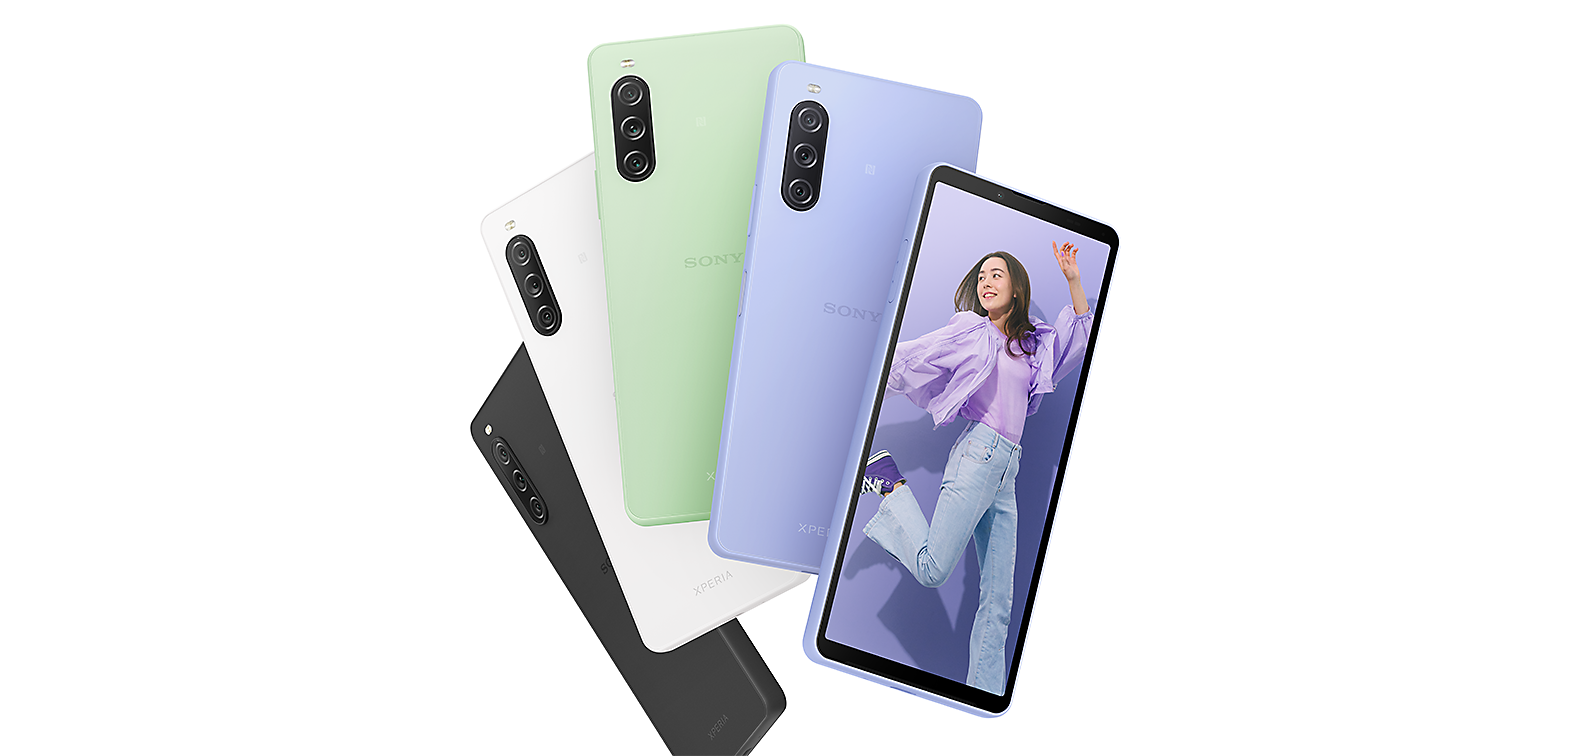 Widok z tyłu smartfonów Xperia 10 V w kolorze czarnym, białym, szarozielonym i lawendowym oraz widok z przodu smartfonu Xperia 10 V w kolorze lawendowym z wyświetlonym na ekranie obrazem młodej kobiety